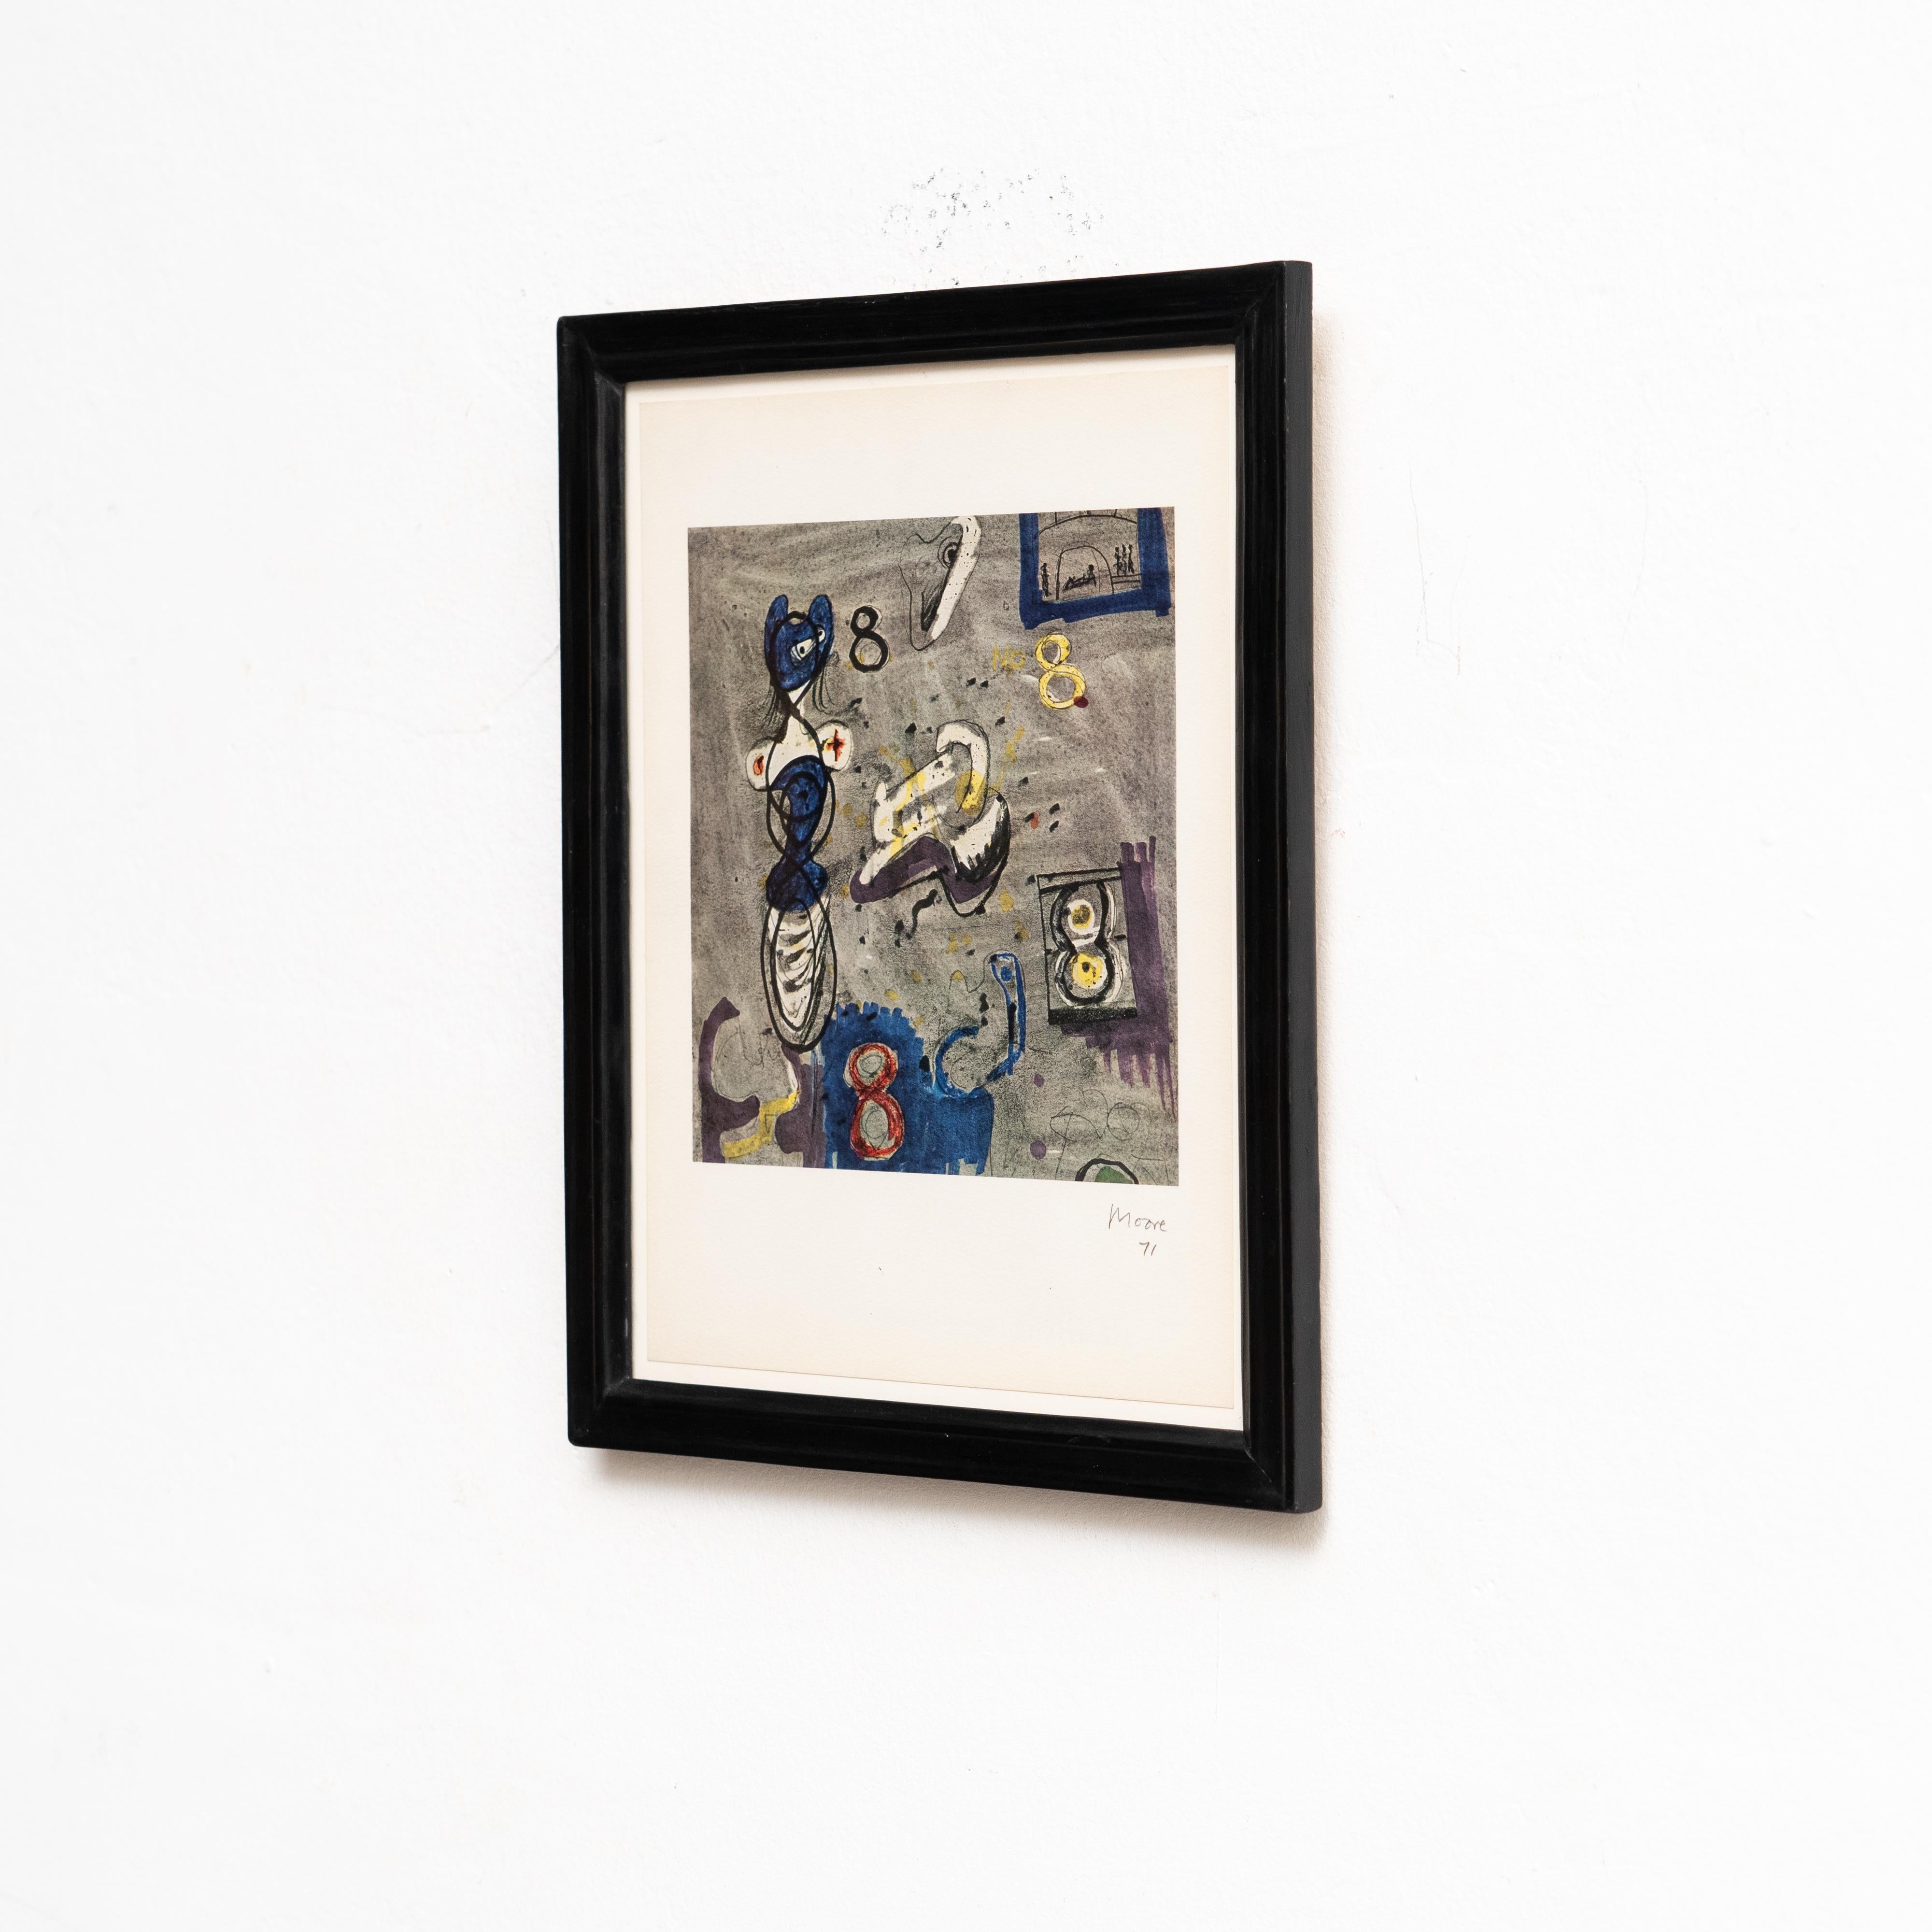 Reproduction photolithographique de l'œuvre d'Henry Moore pour Bolaffiarte

Fabriqué en Angleterre, vers 1971.

Copie 279 de 5000 copies limitées.

Encadré et signé dans la pierre.

En bon état d'origine, avec une usure mineure conforme à